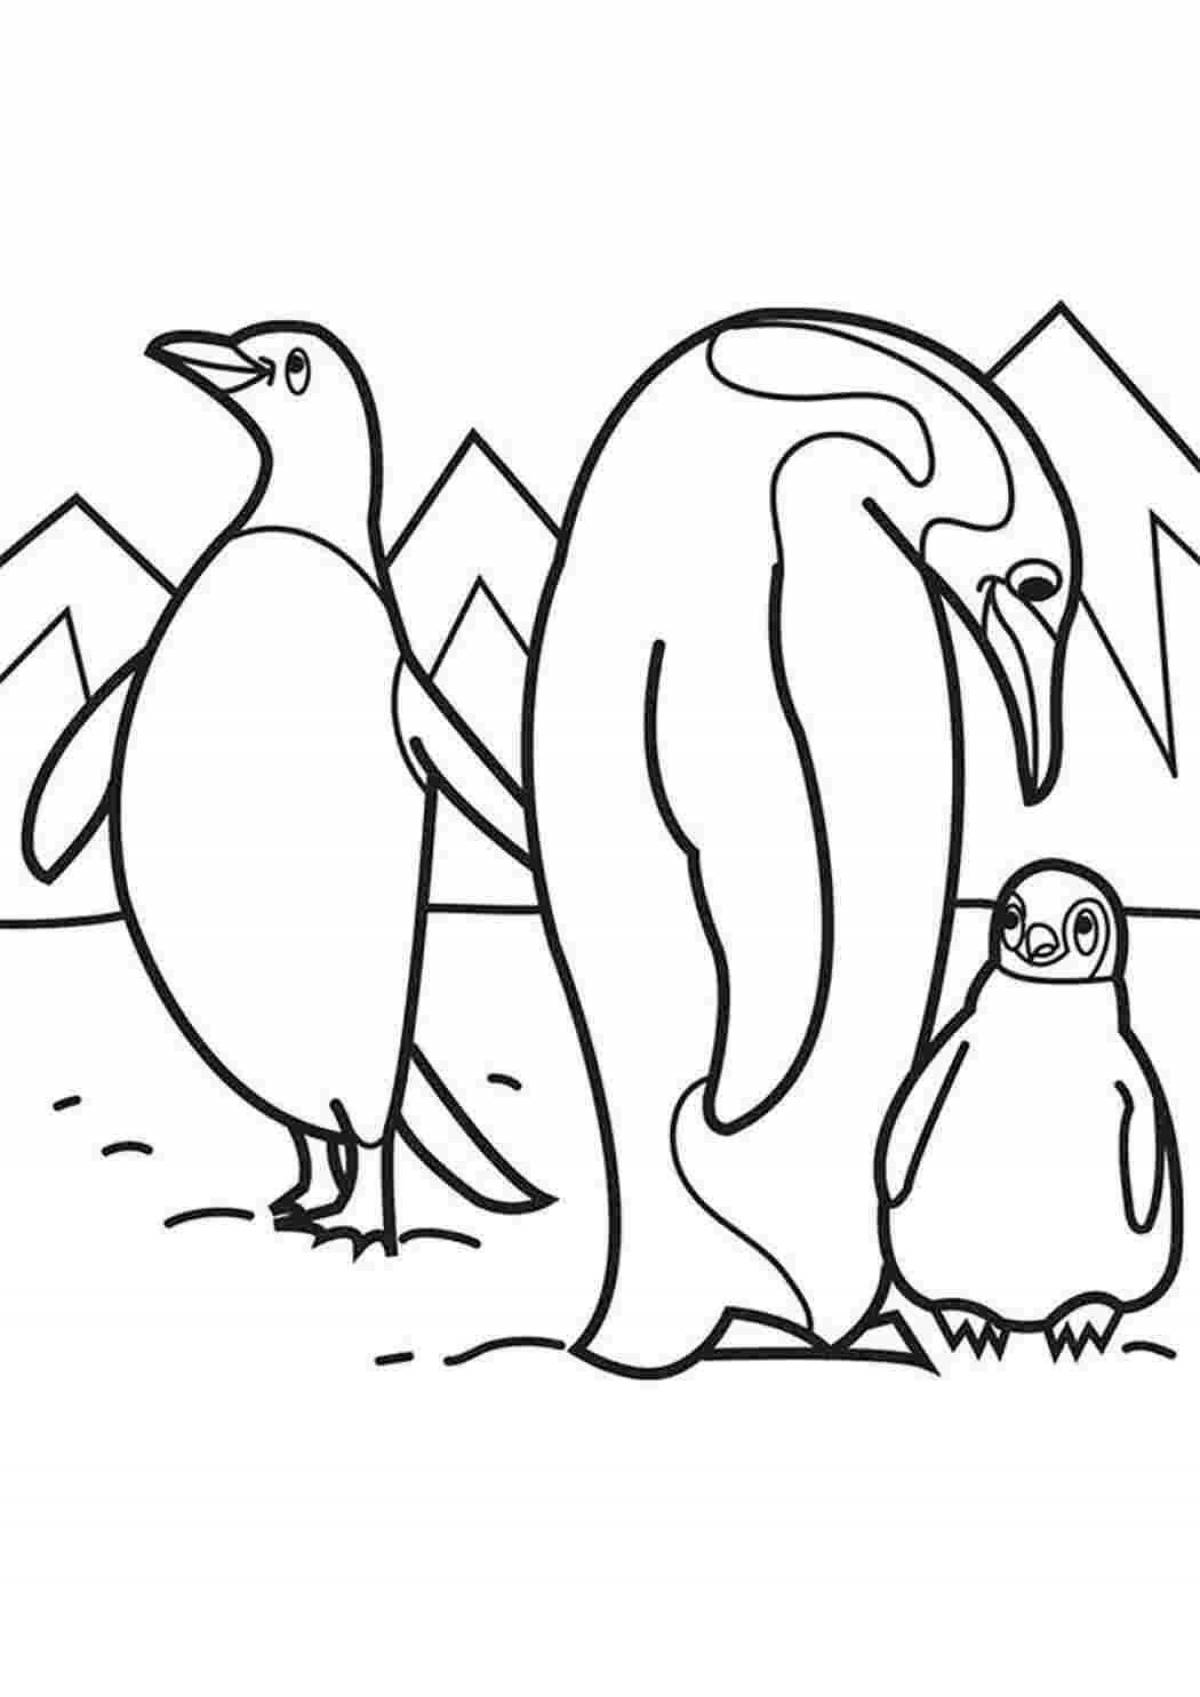 Праздничная раскраска семьи пингвинов